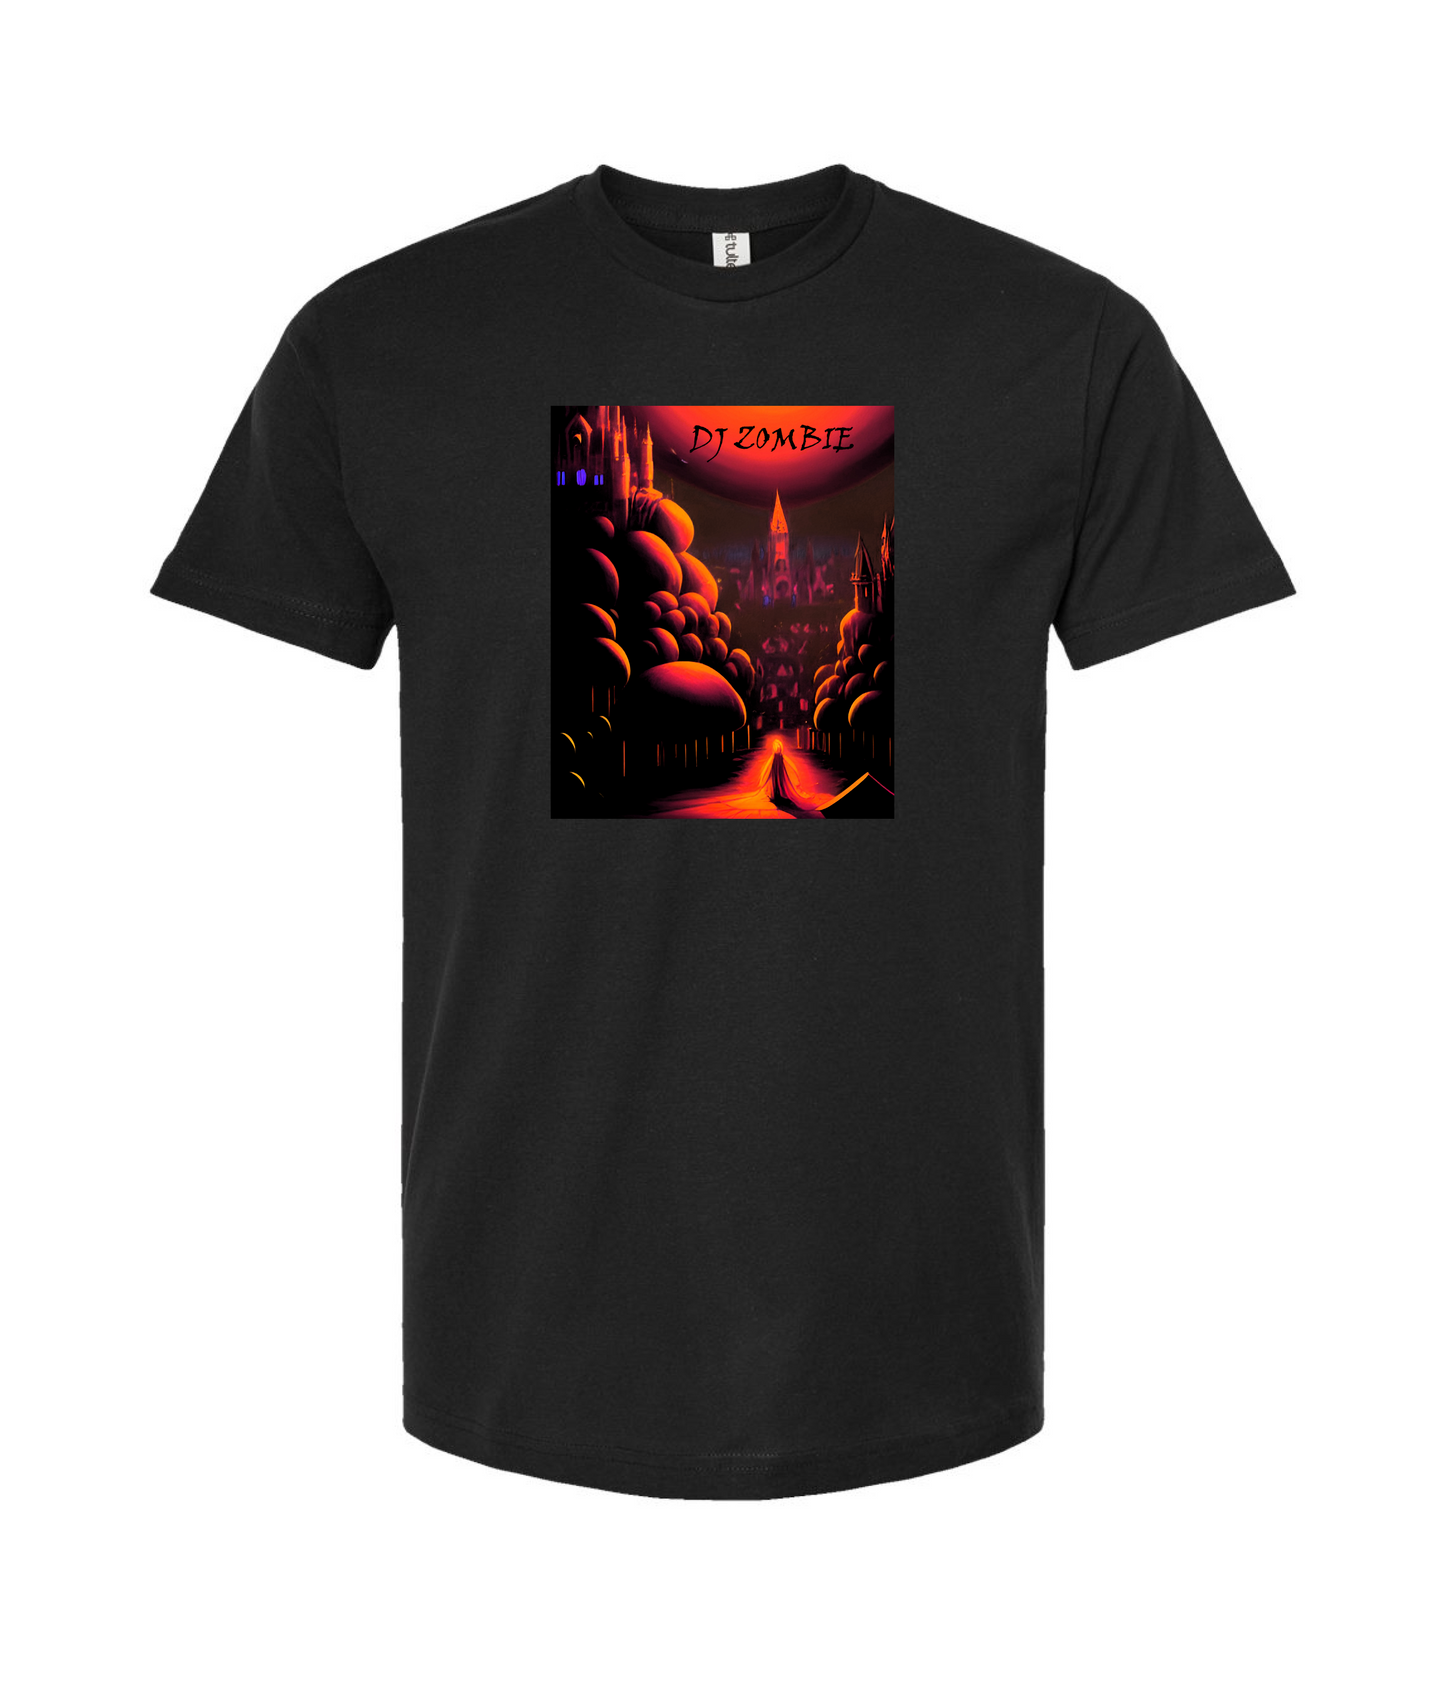 Dj Zombie - Mushroom Forest - Black T-Shirt